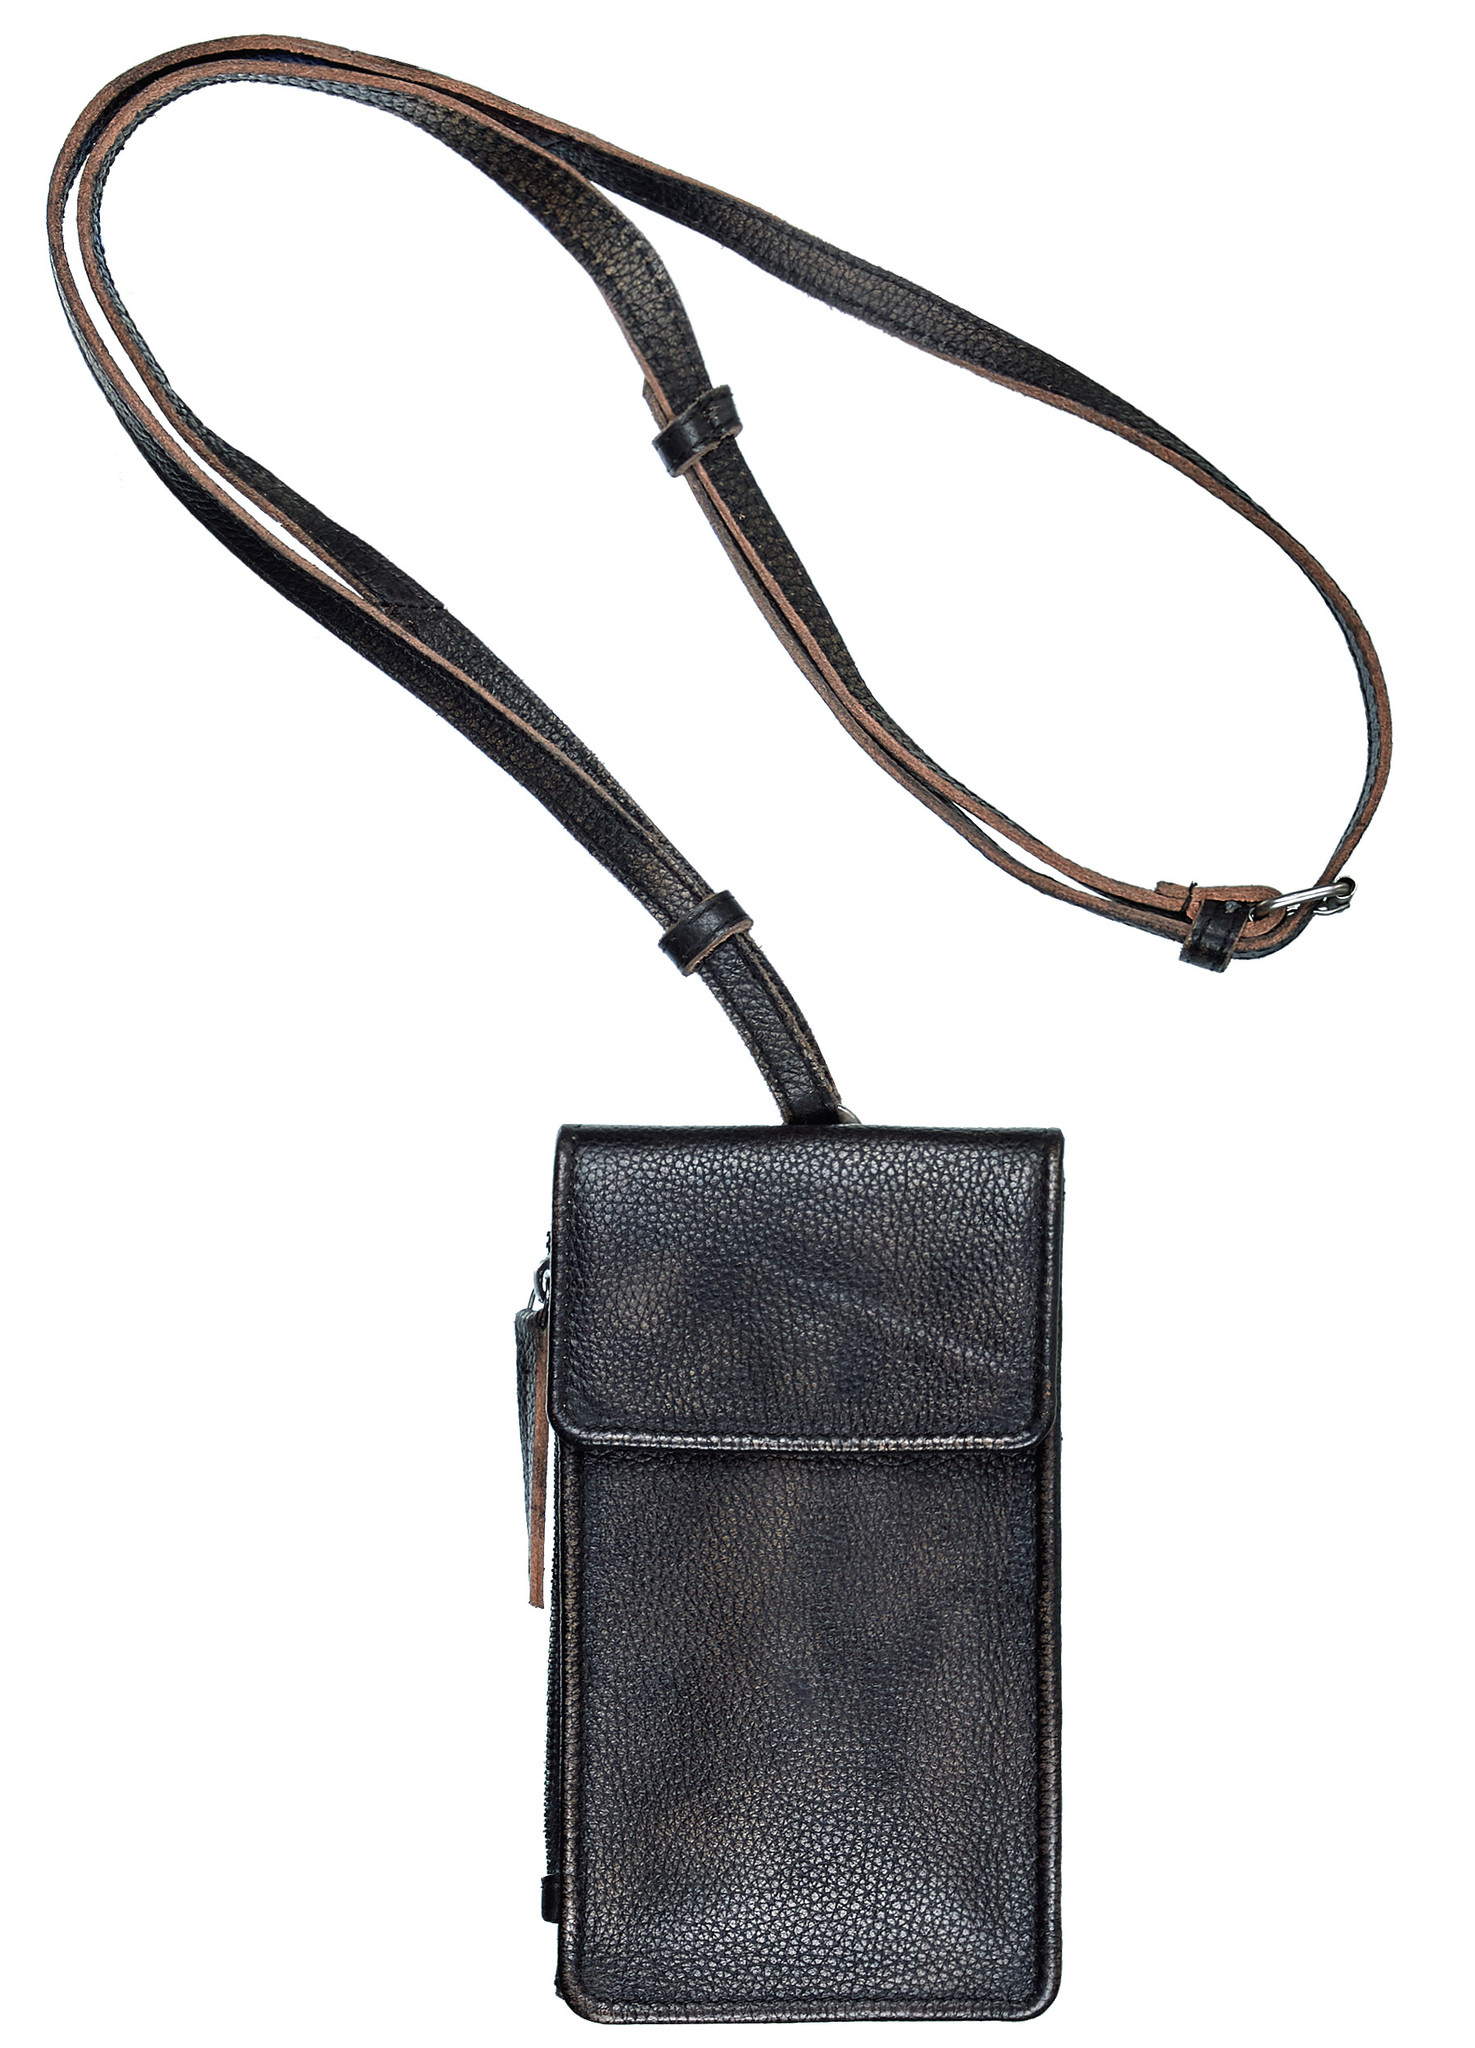 Leder Tasche für Handy Festivaltasche Schwarz - Barneys Leather